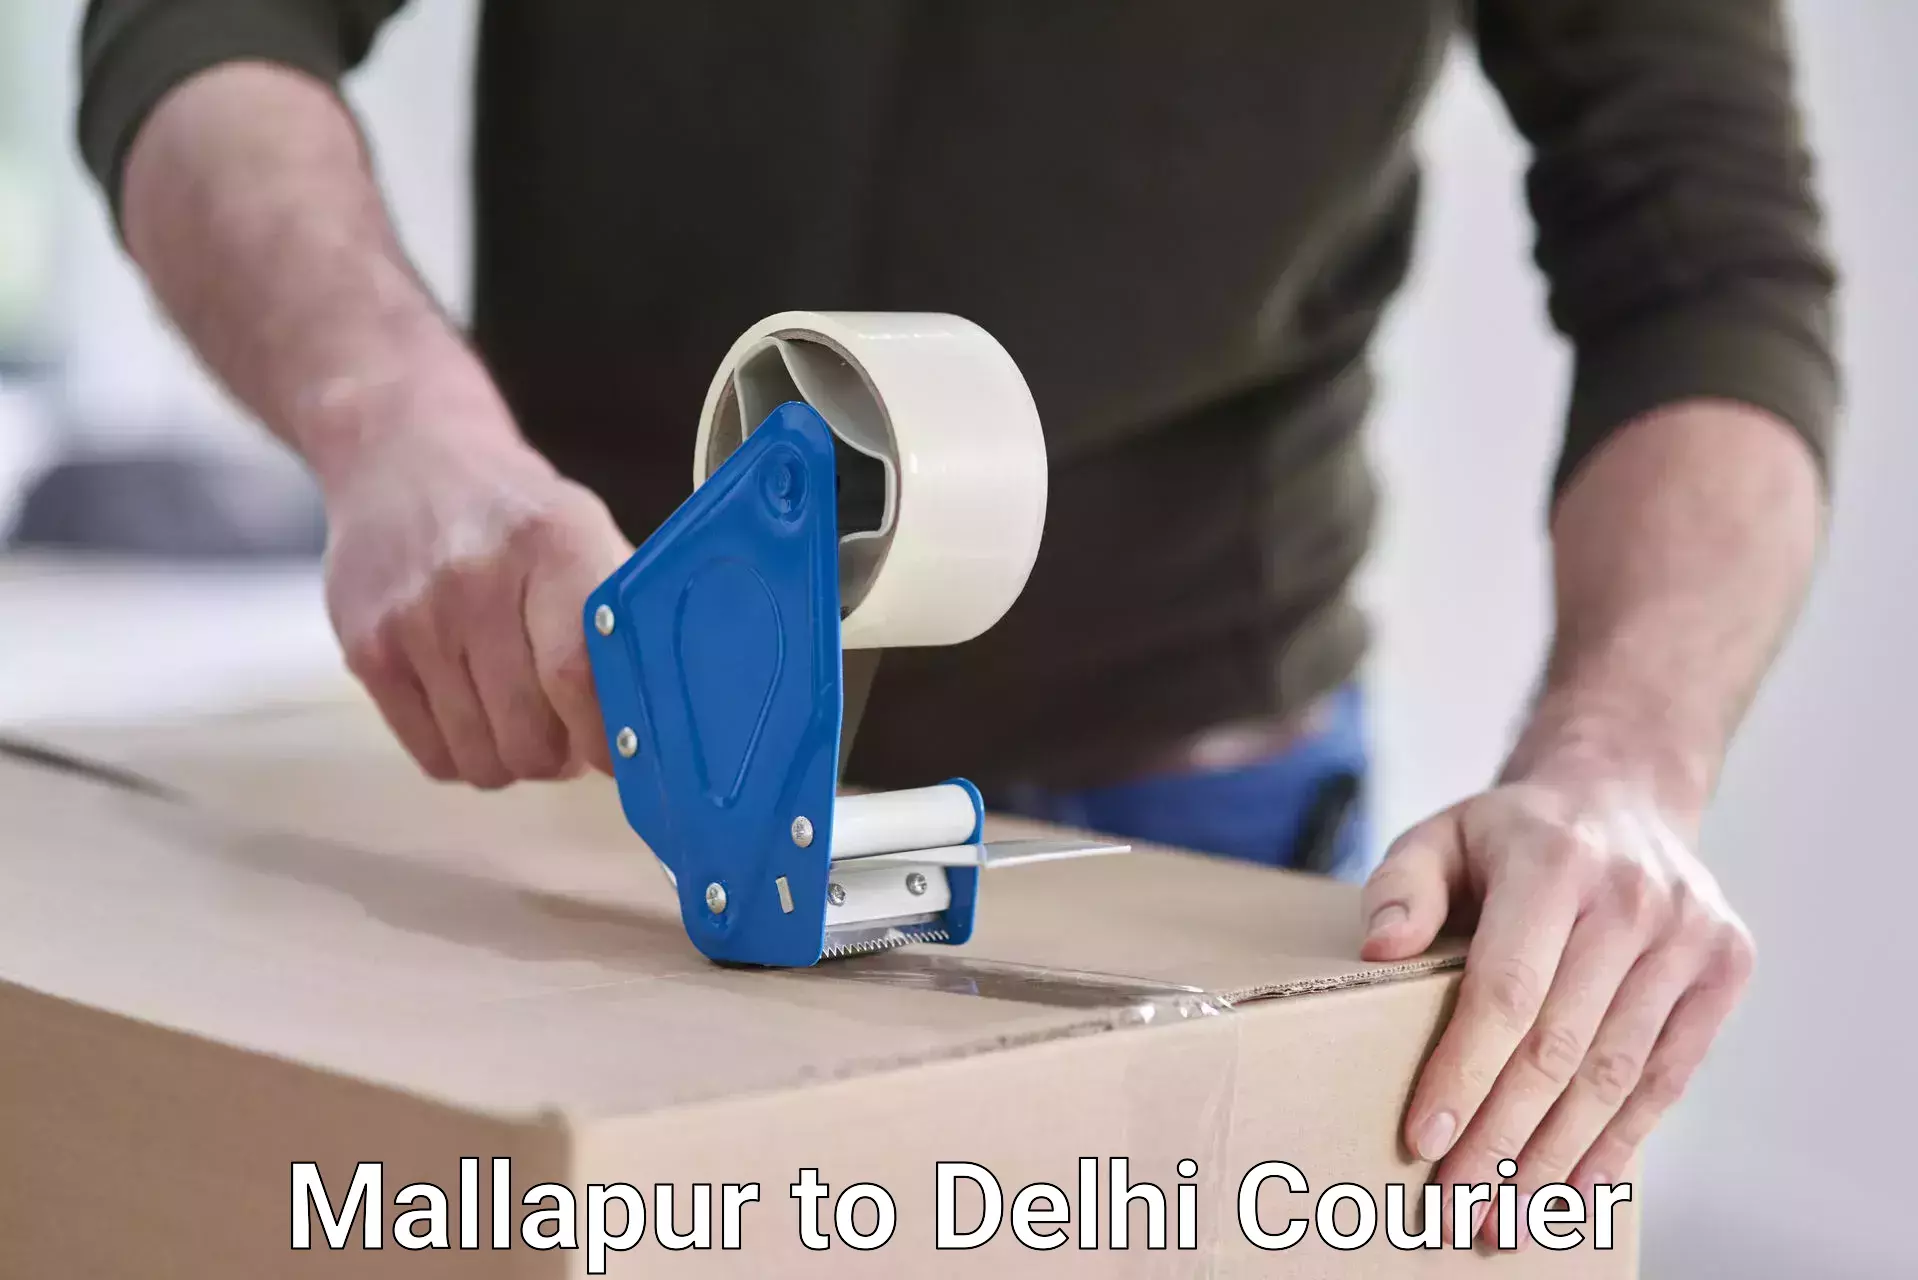 Fast delivery service Mallapur to Delhi